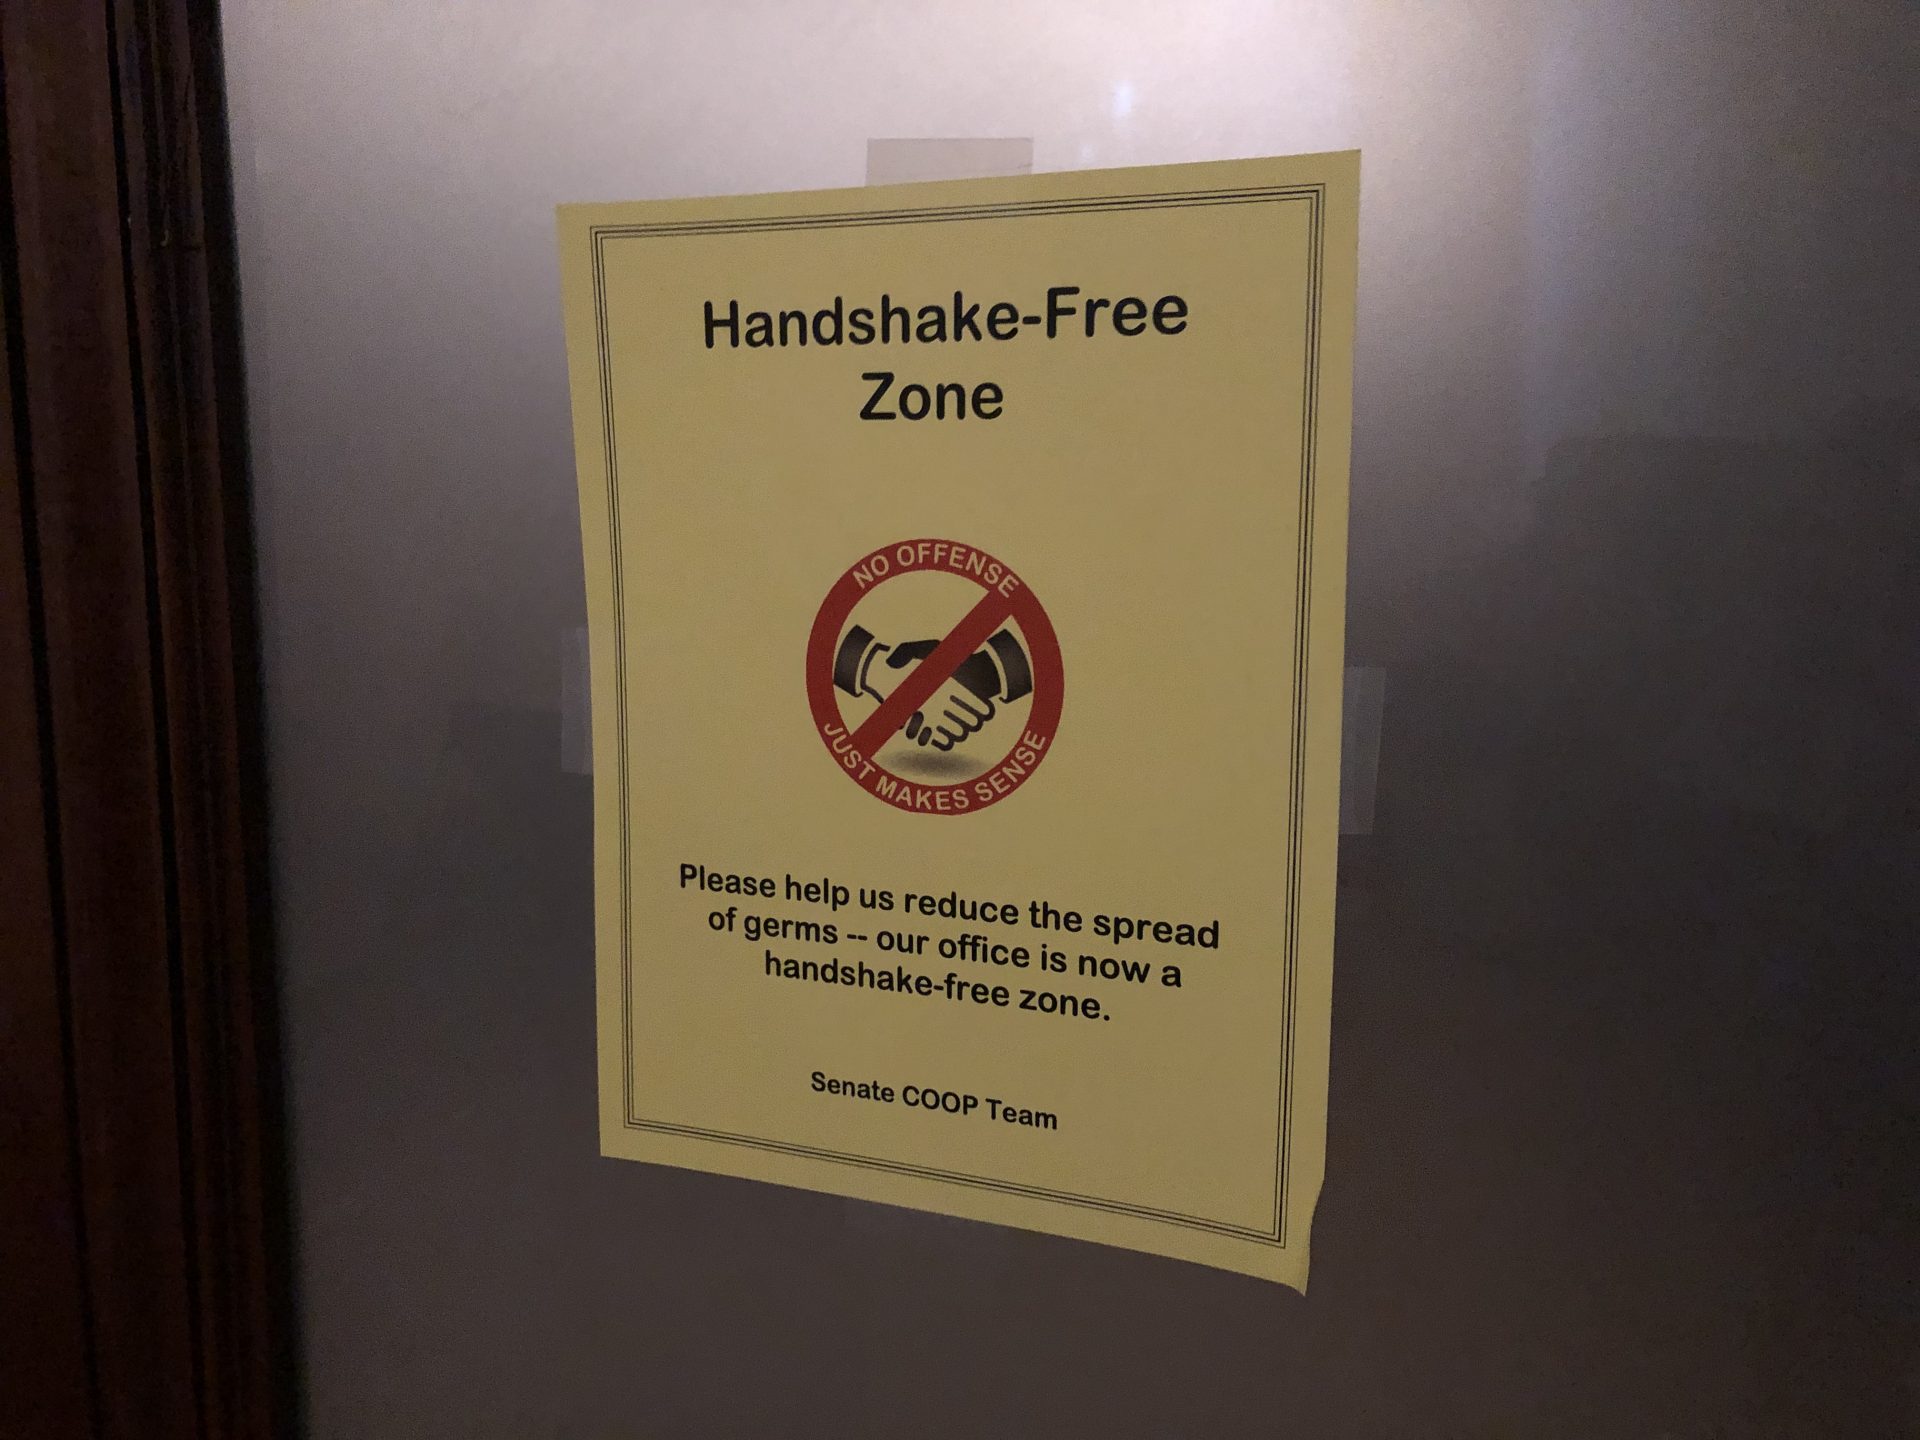 Handshake-free zone